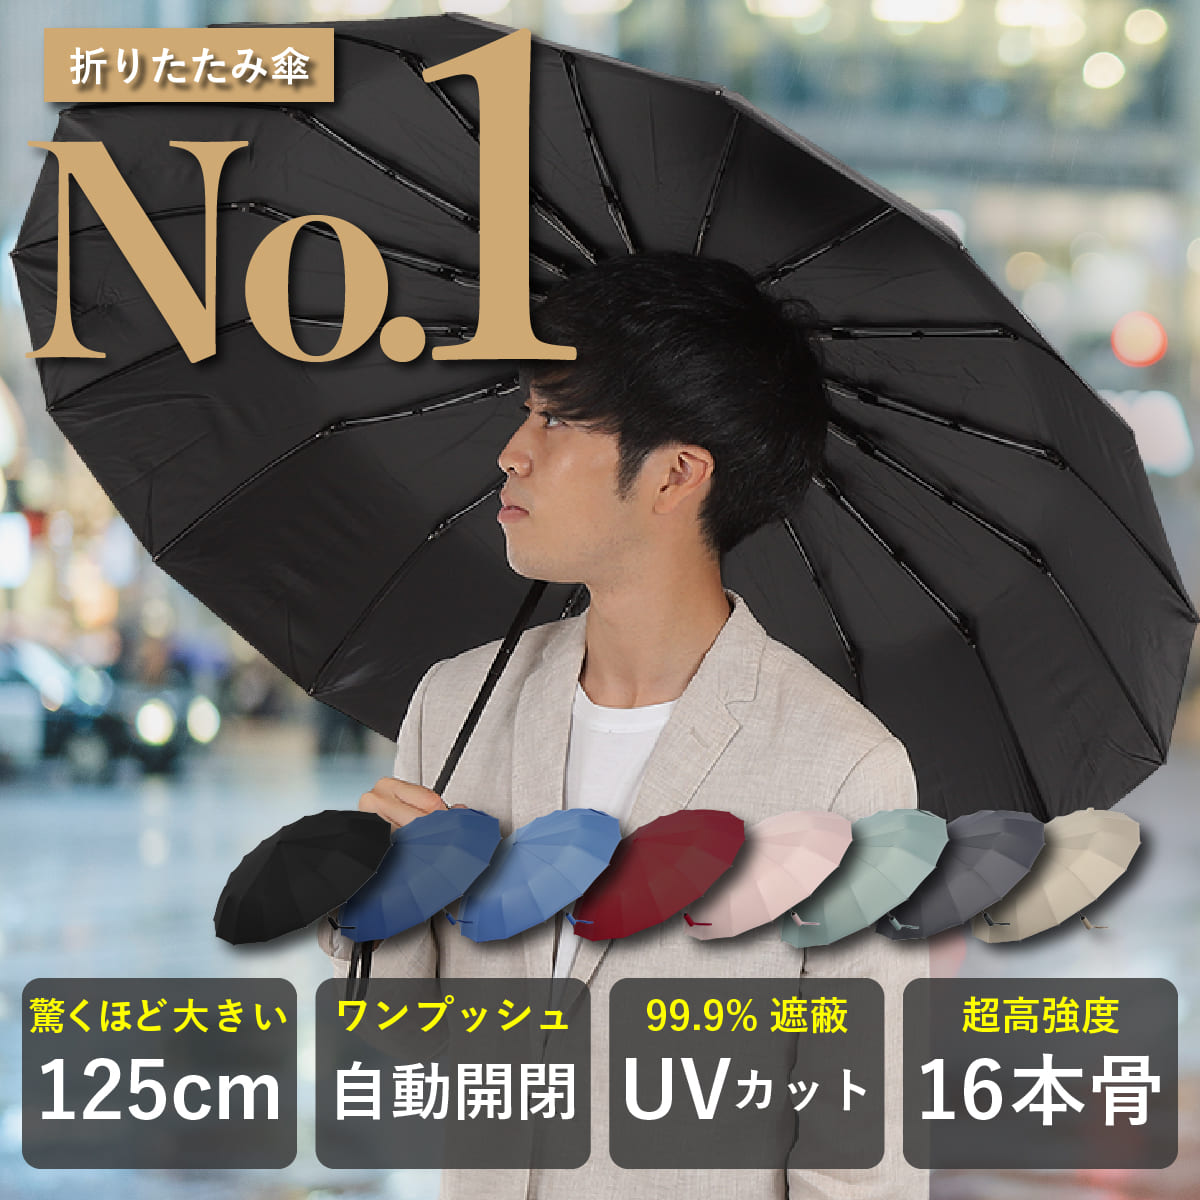 折りたたみ傘 大きいサイズ 125cm 自動開閉 遮蔽率99.9% UVカット